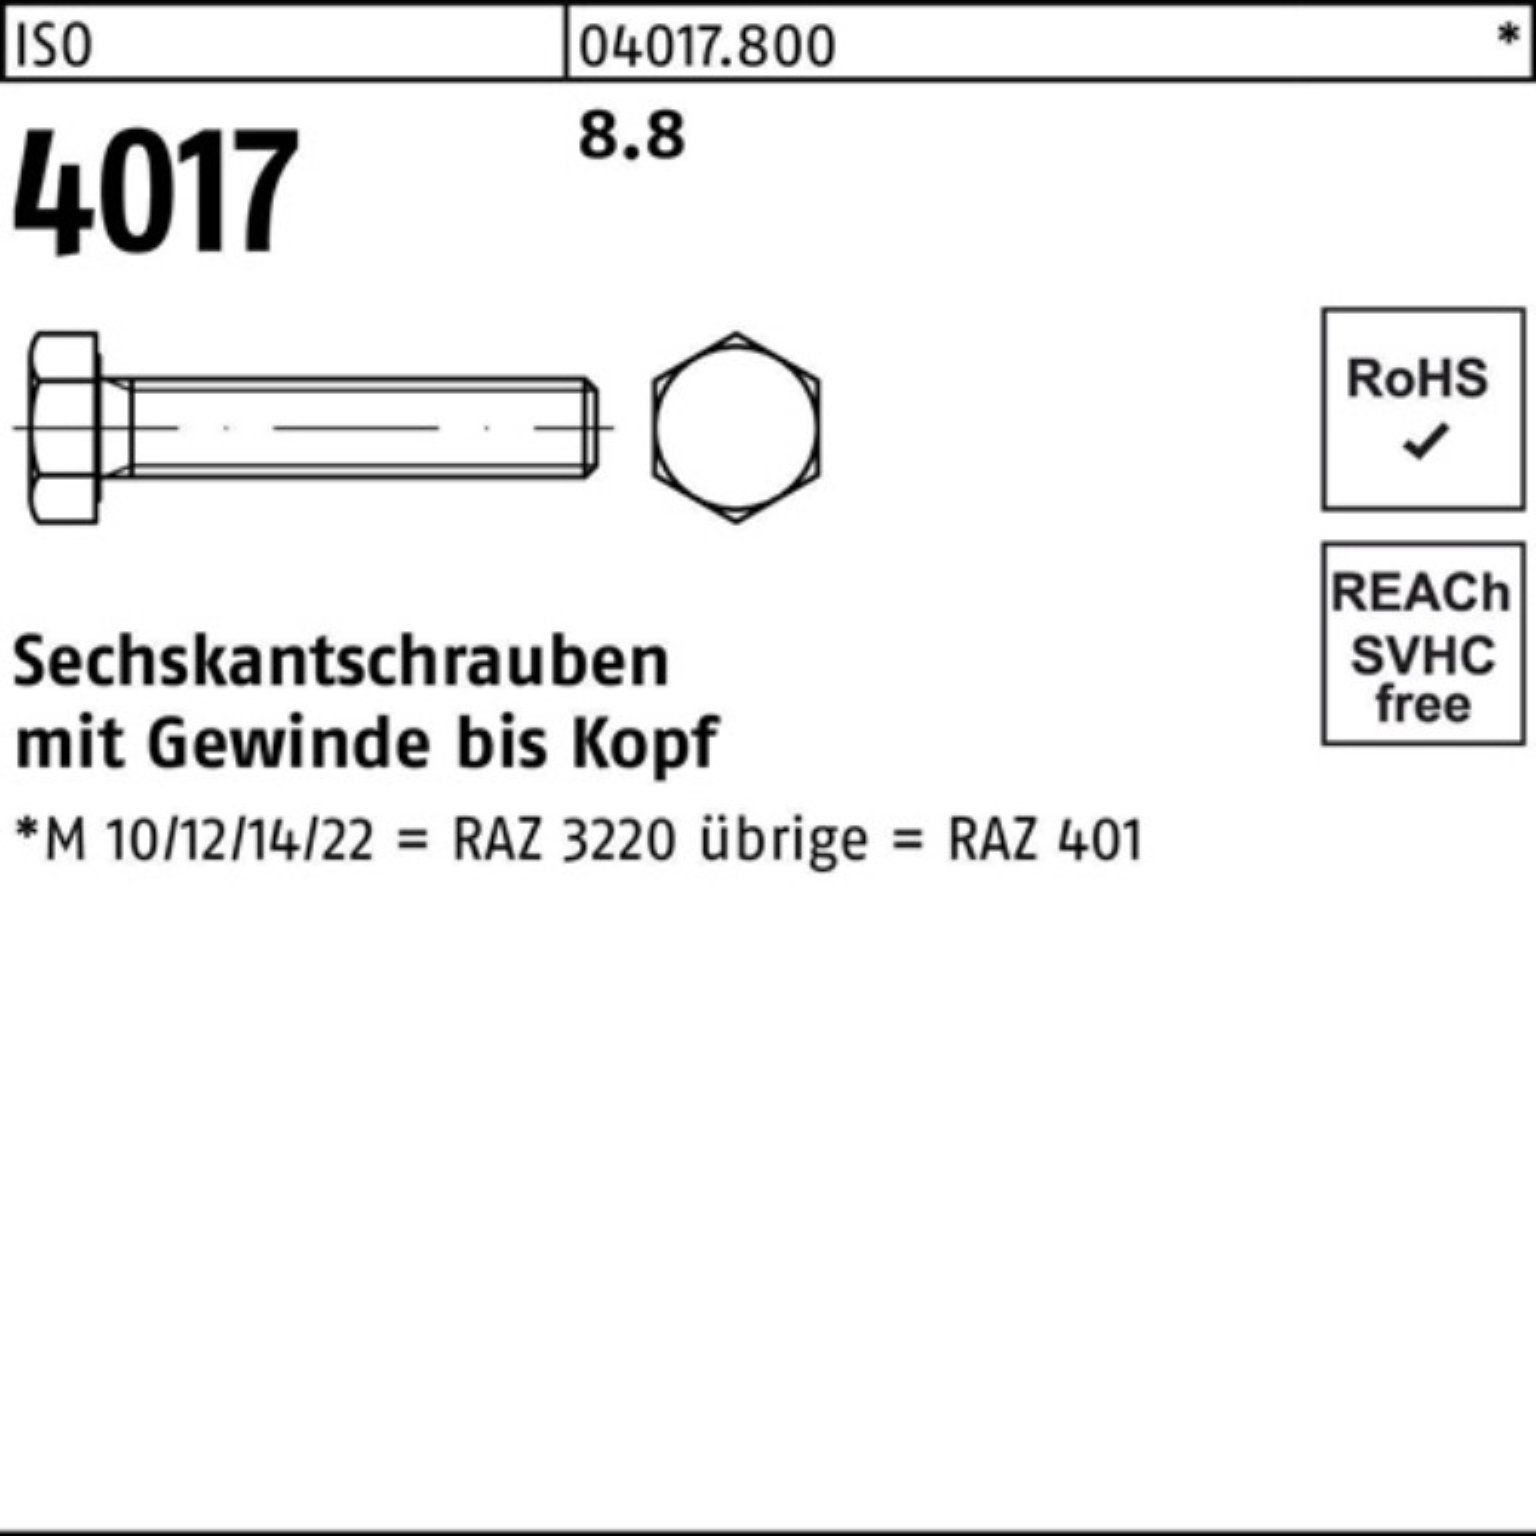 Bufab Sechskantschraube 200er 40 Pack 4017 8.8 18 ISO VG ISO Stück M10x 200 Sechskantschraube